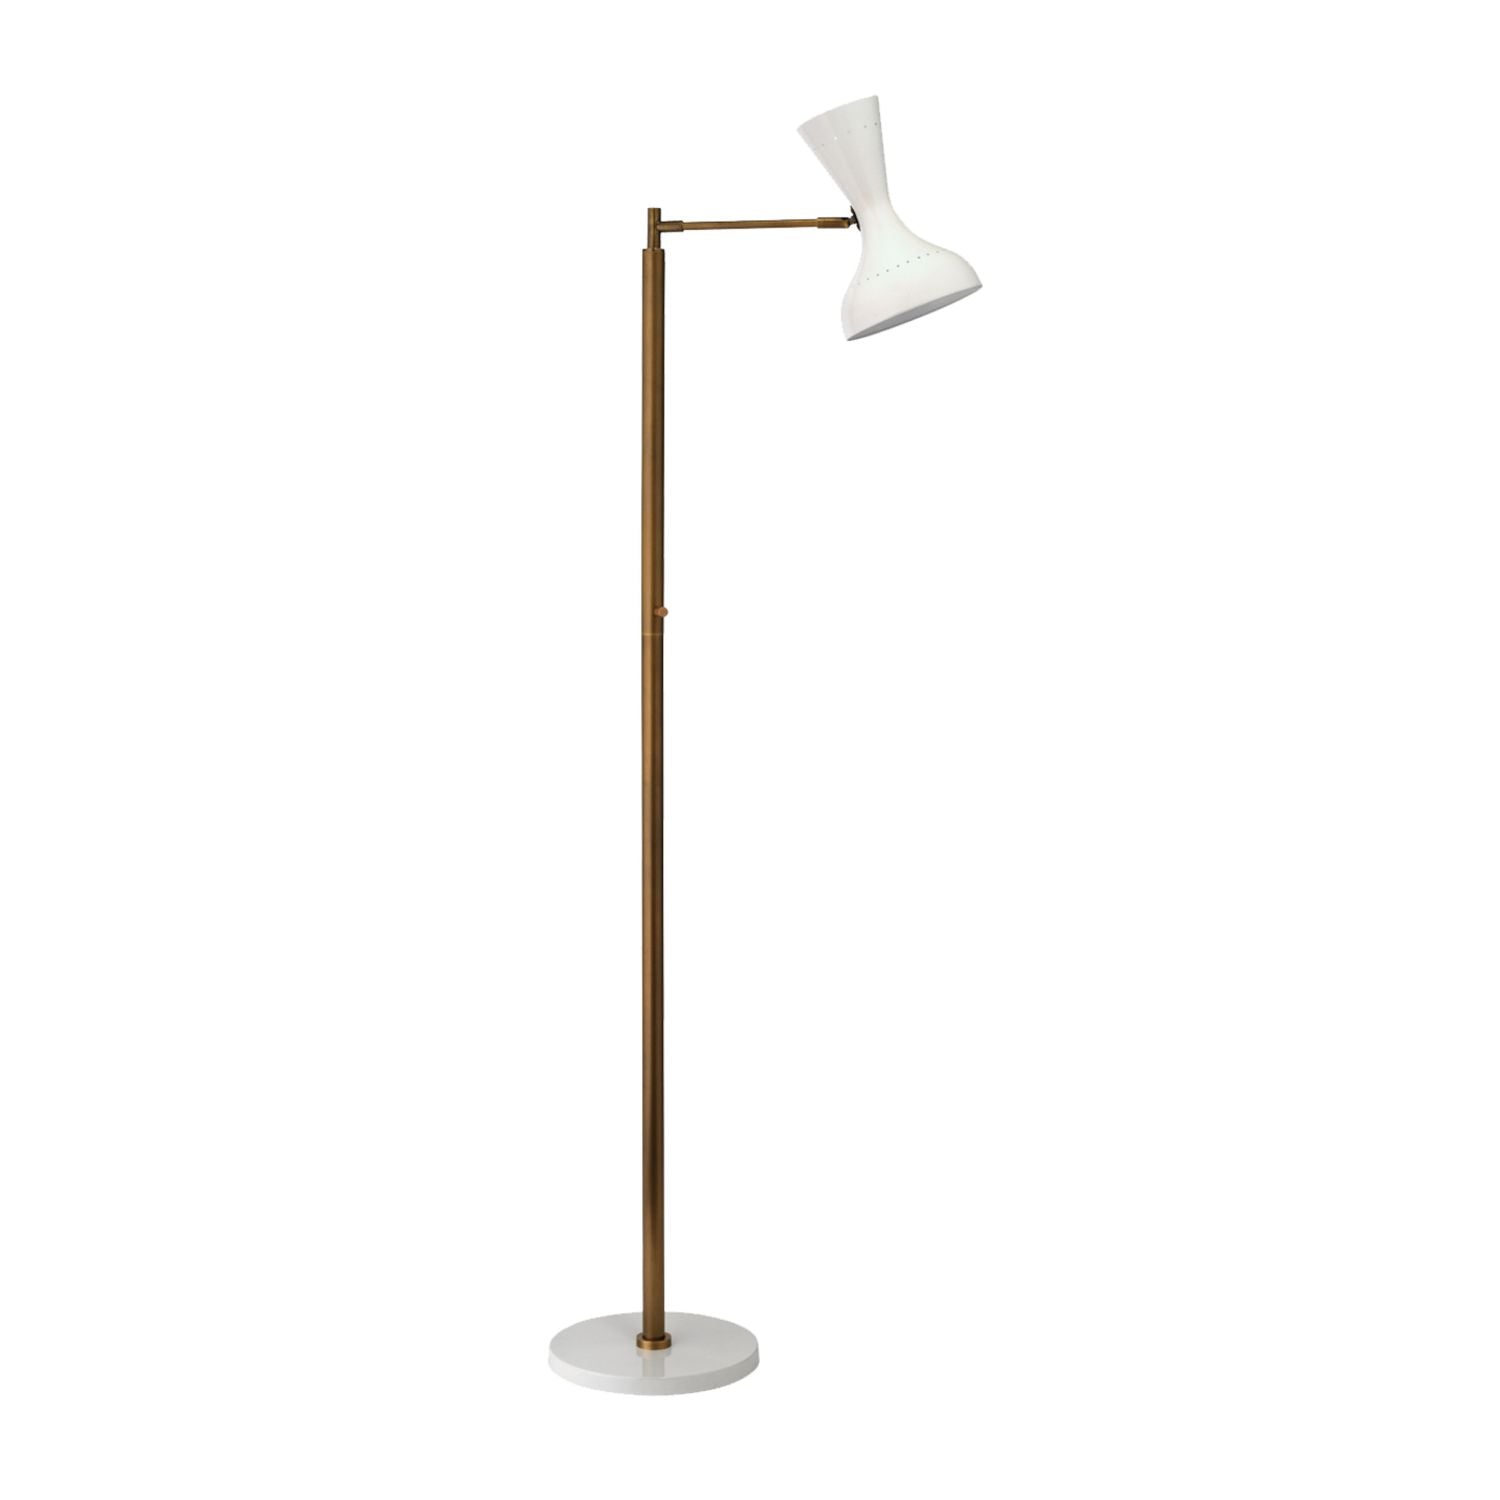 Pisa Swing Arm Floor Lamp, White